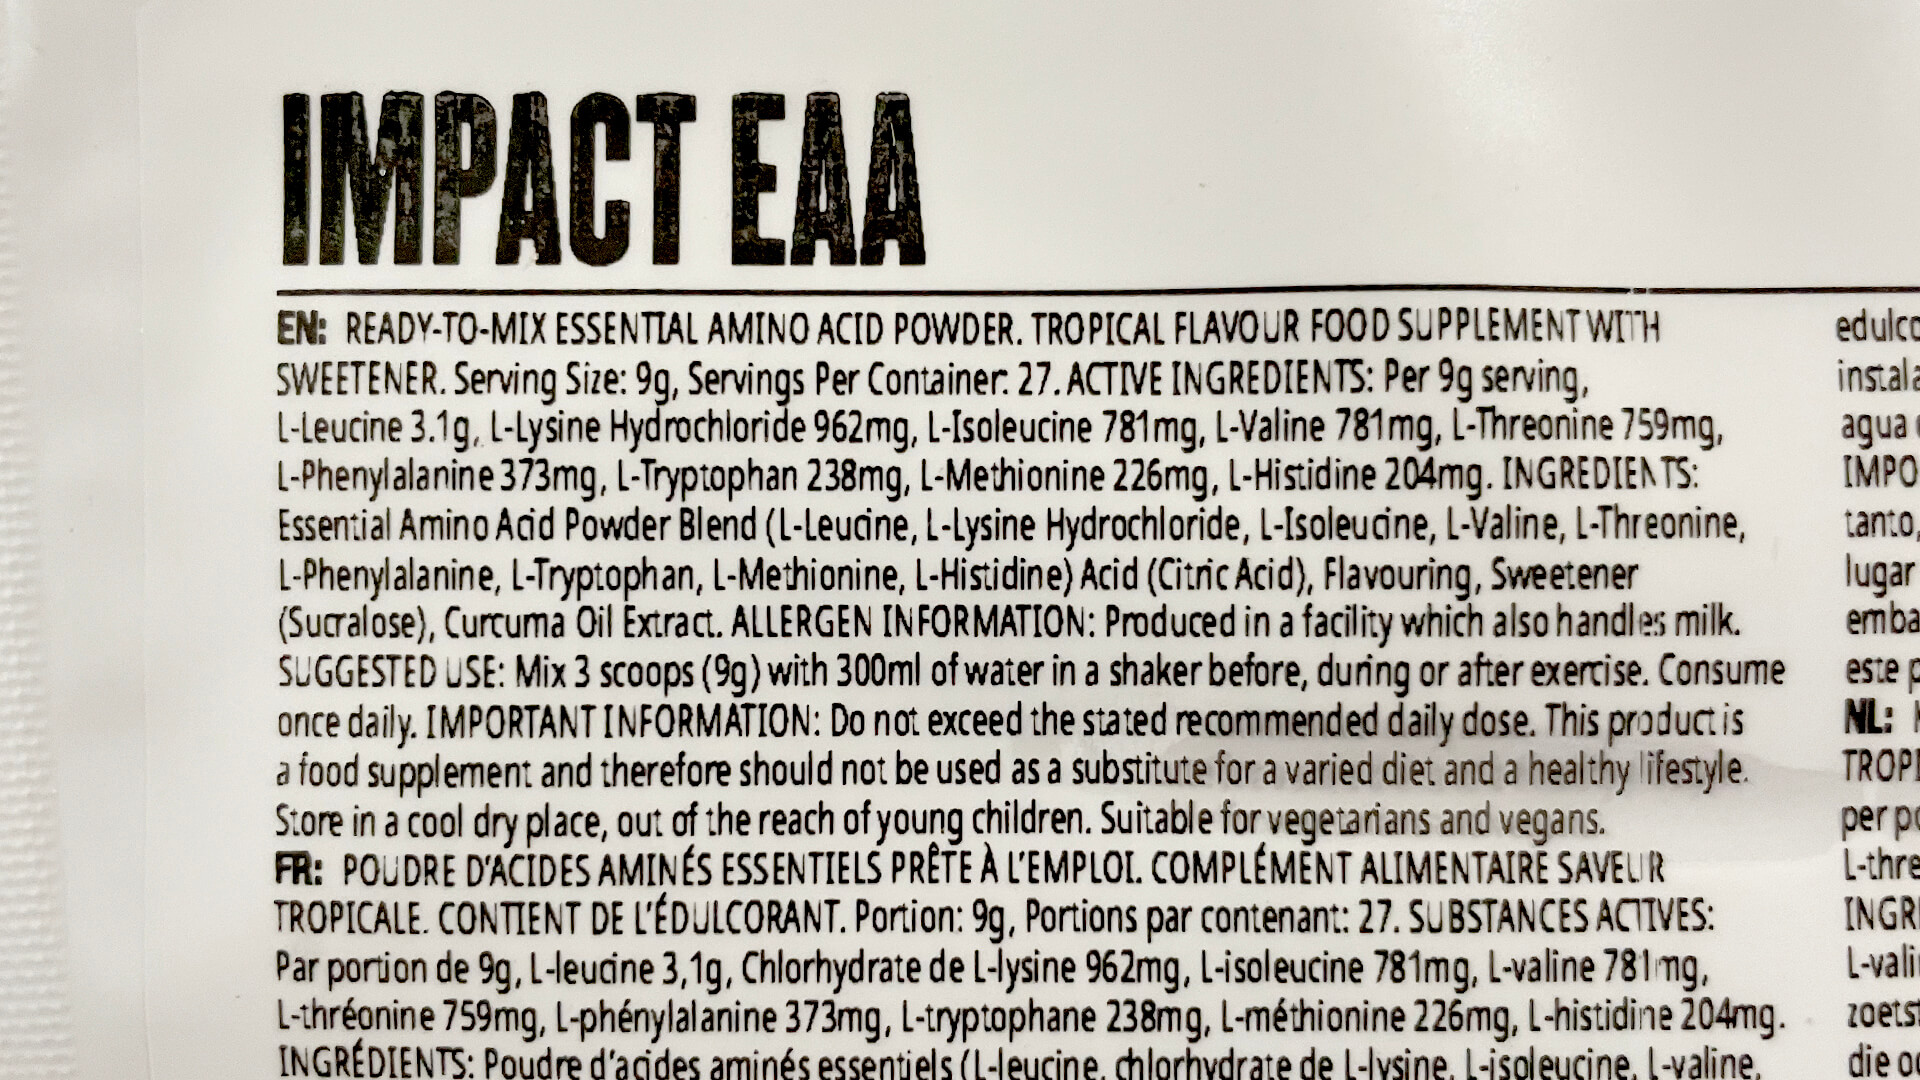 マイプロテイン EAA トロピカル味の栄養成分表示及び原材料